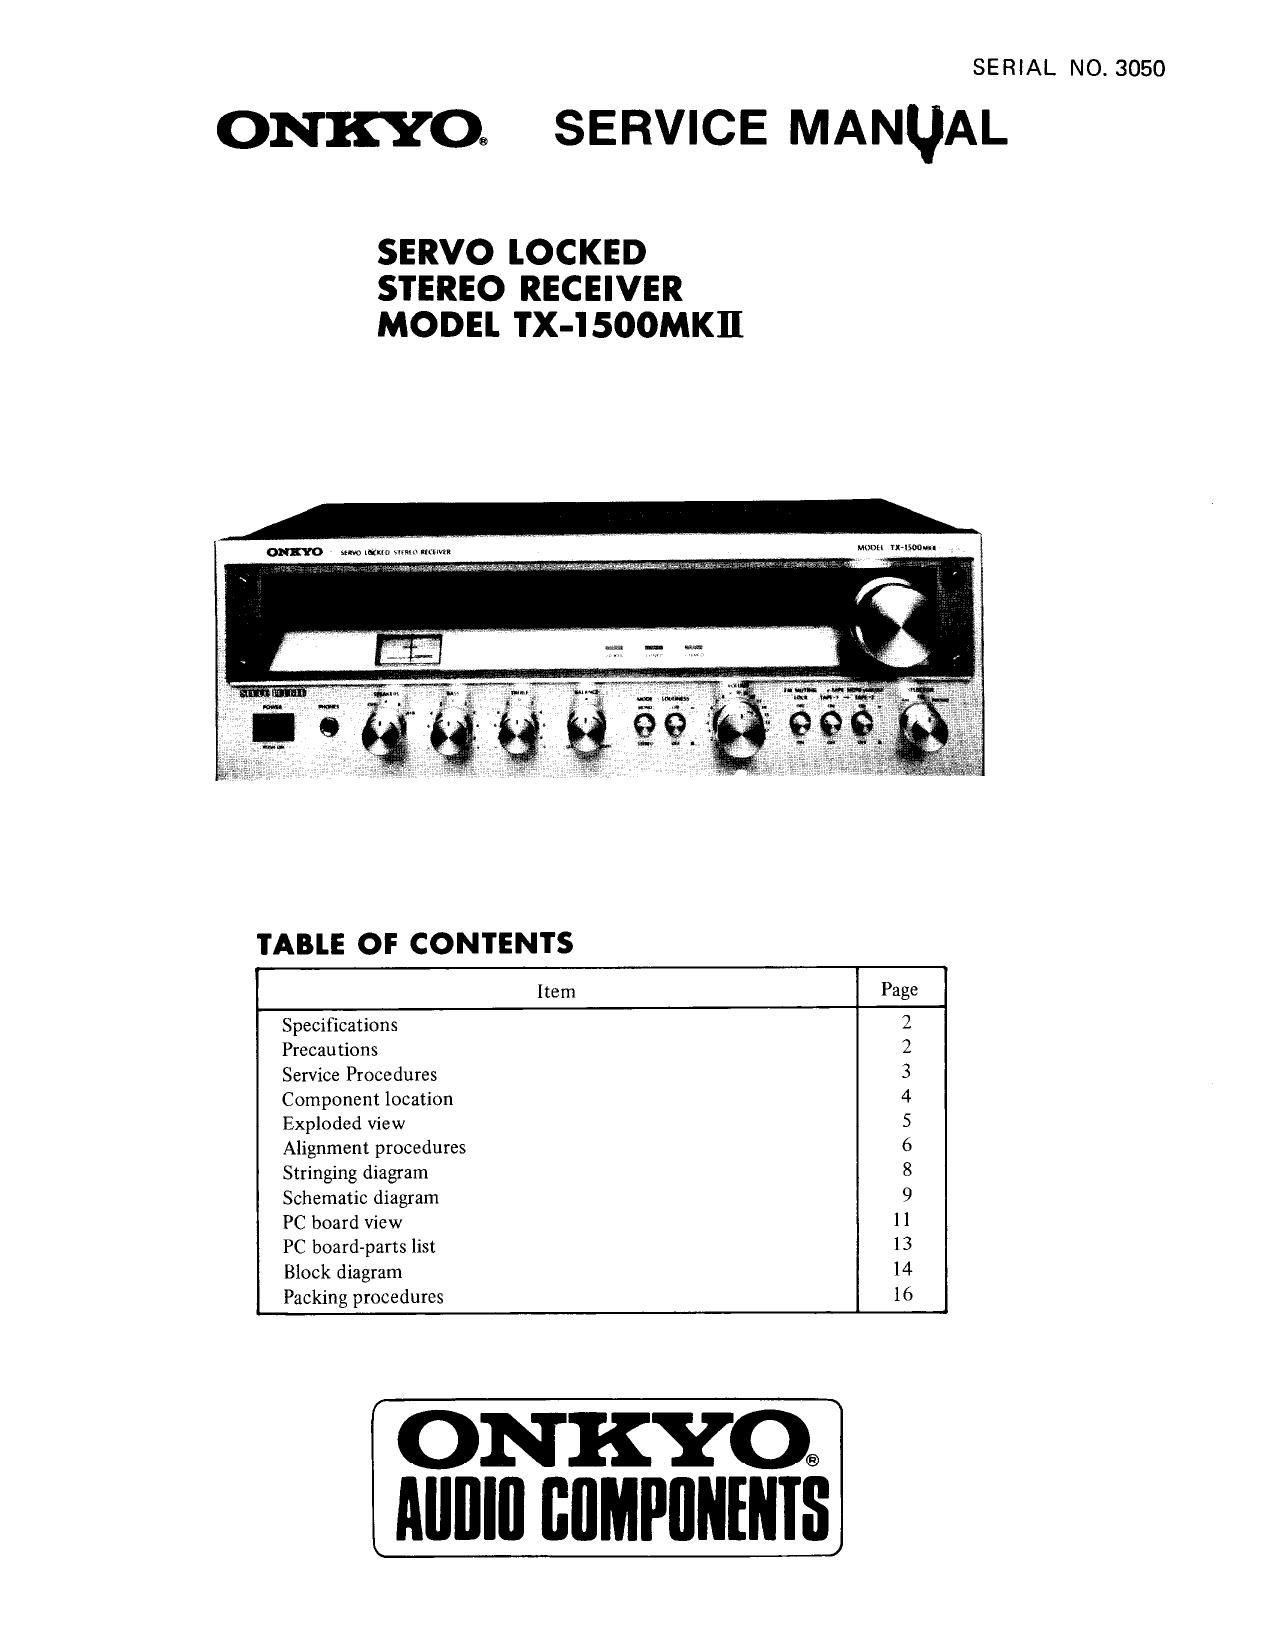 Onkyo TX 1500 Mk2 Service Manual